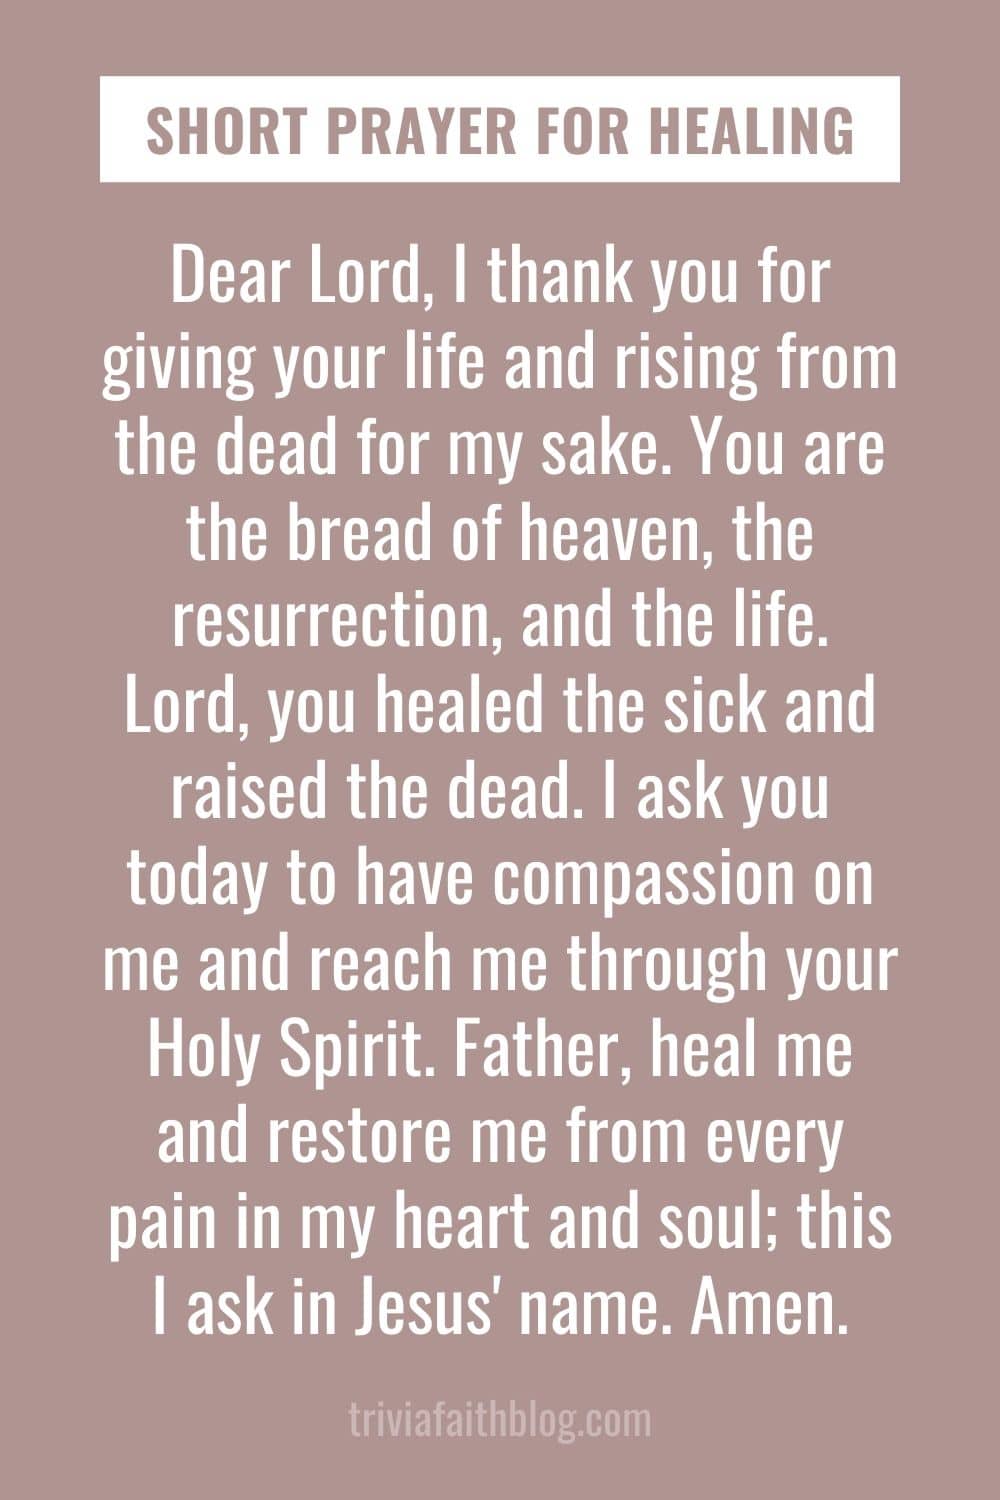 Short prayers for healing